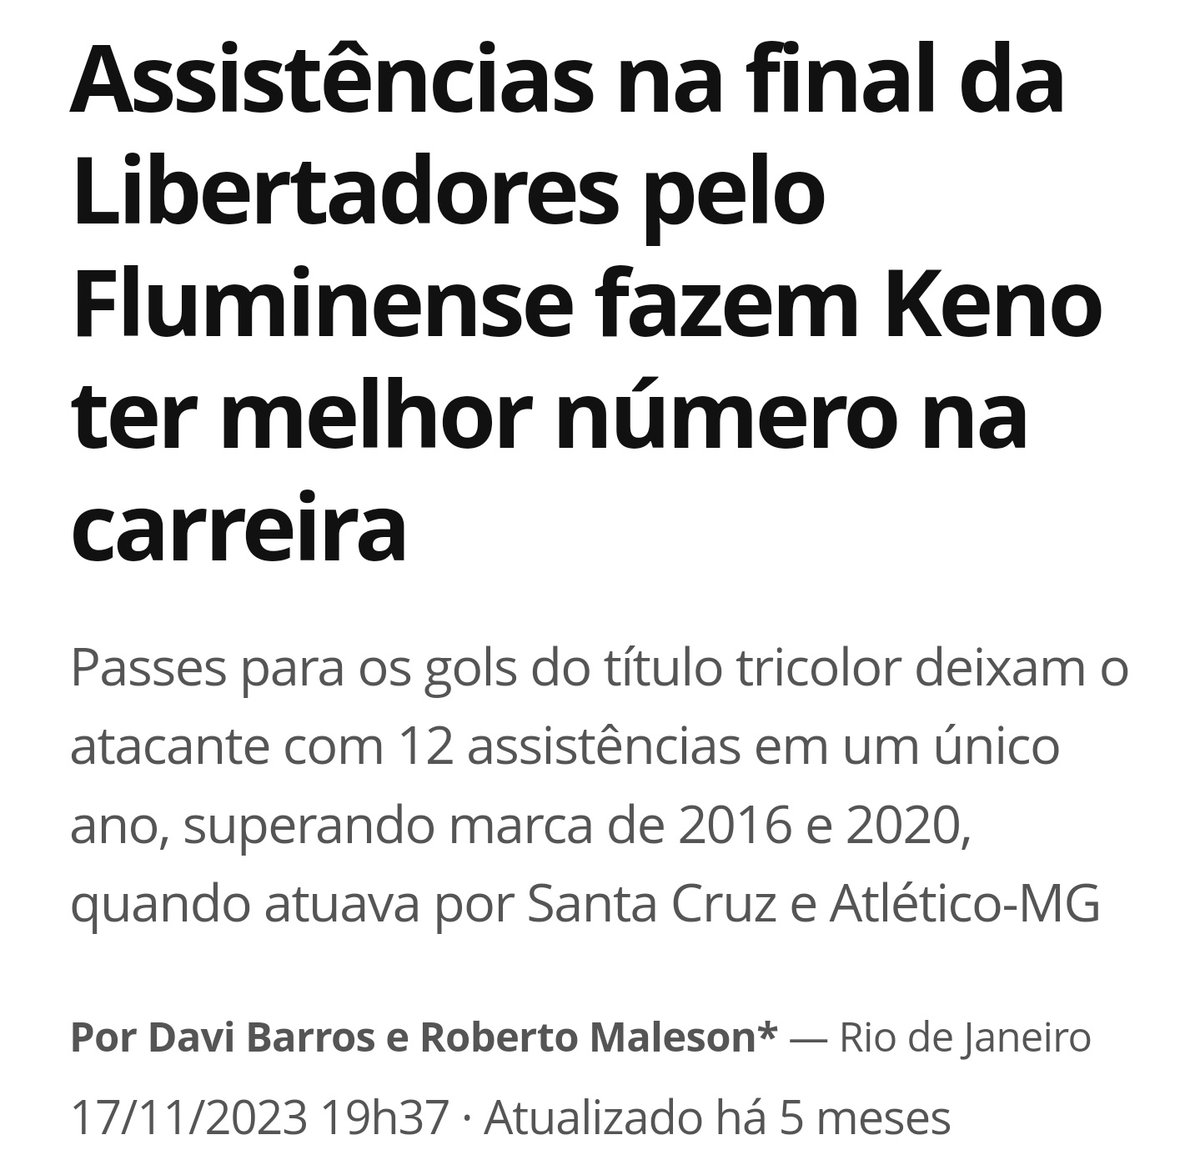 Há 5 meses o Keno tava dando 2 assistências numa final de Libertadores. 
O físico preocupa ? Sim. Mas se tiver inteiro ainda dá um caldo.